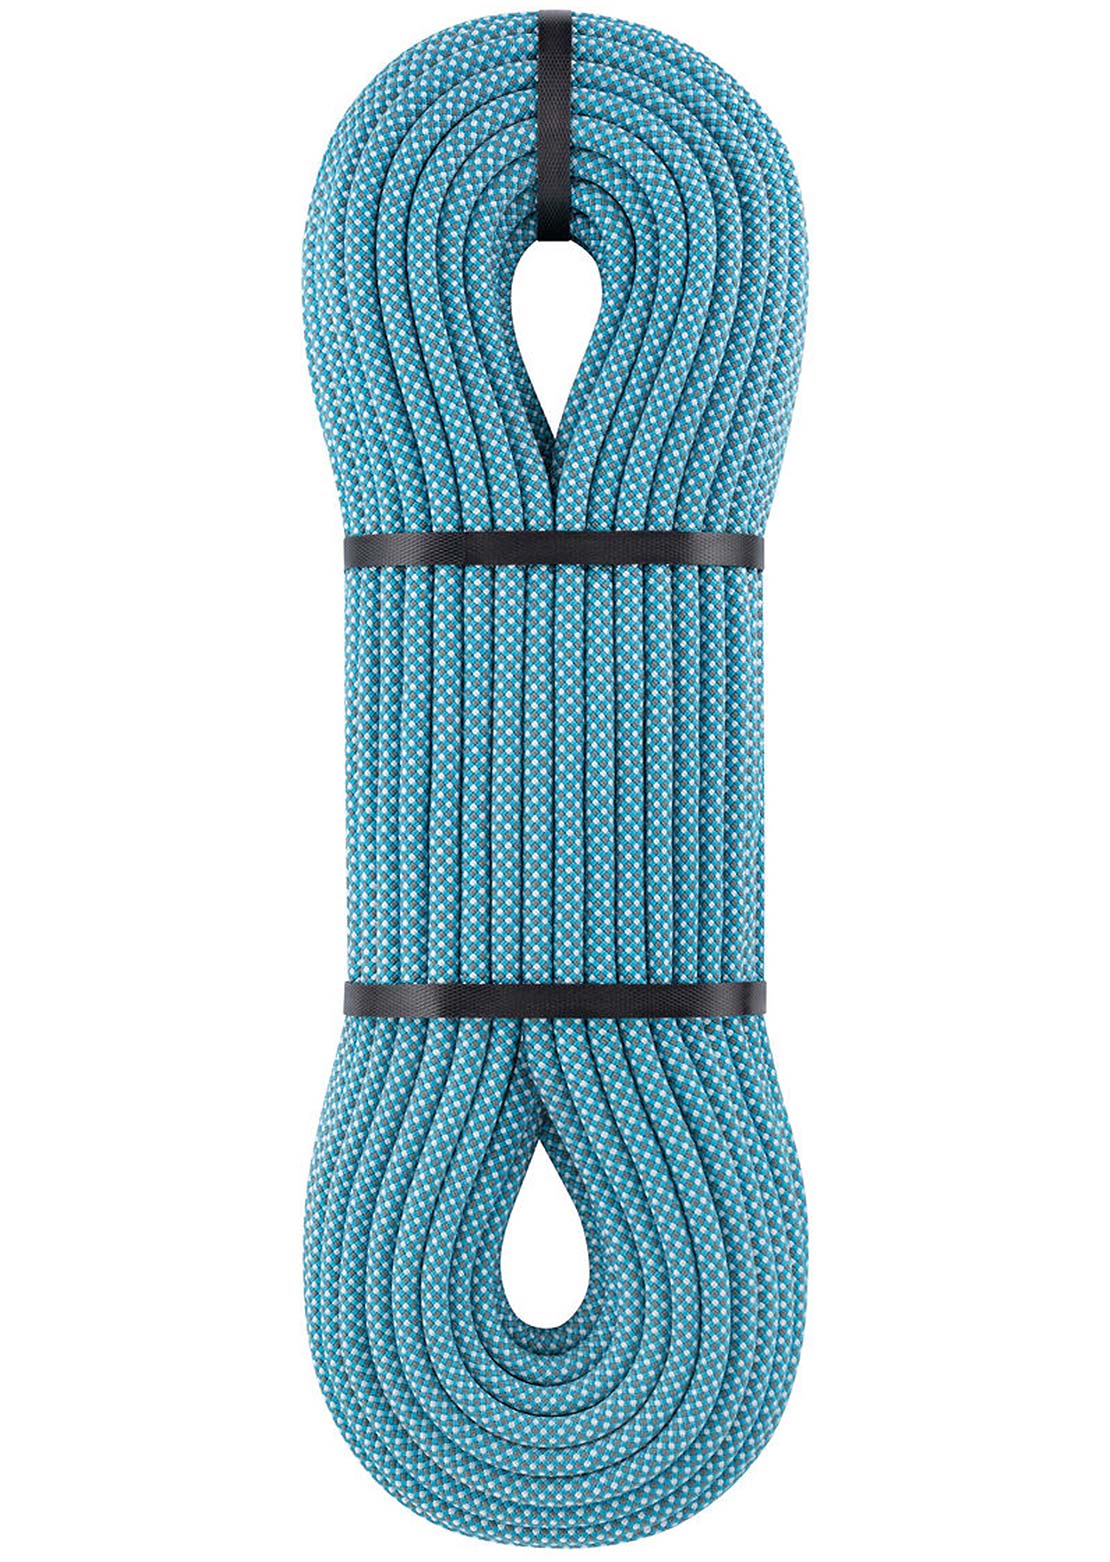 Petzl Mambo 10.1mm Climbing Rope - 60m Turquoise